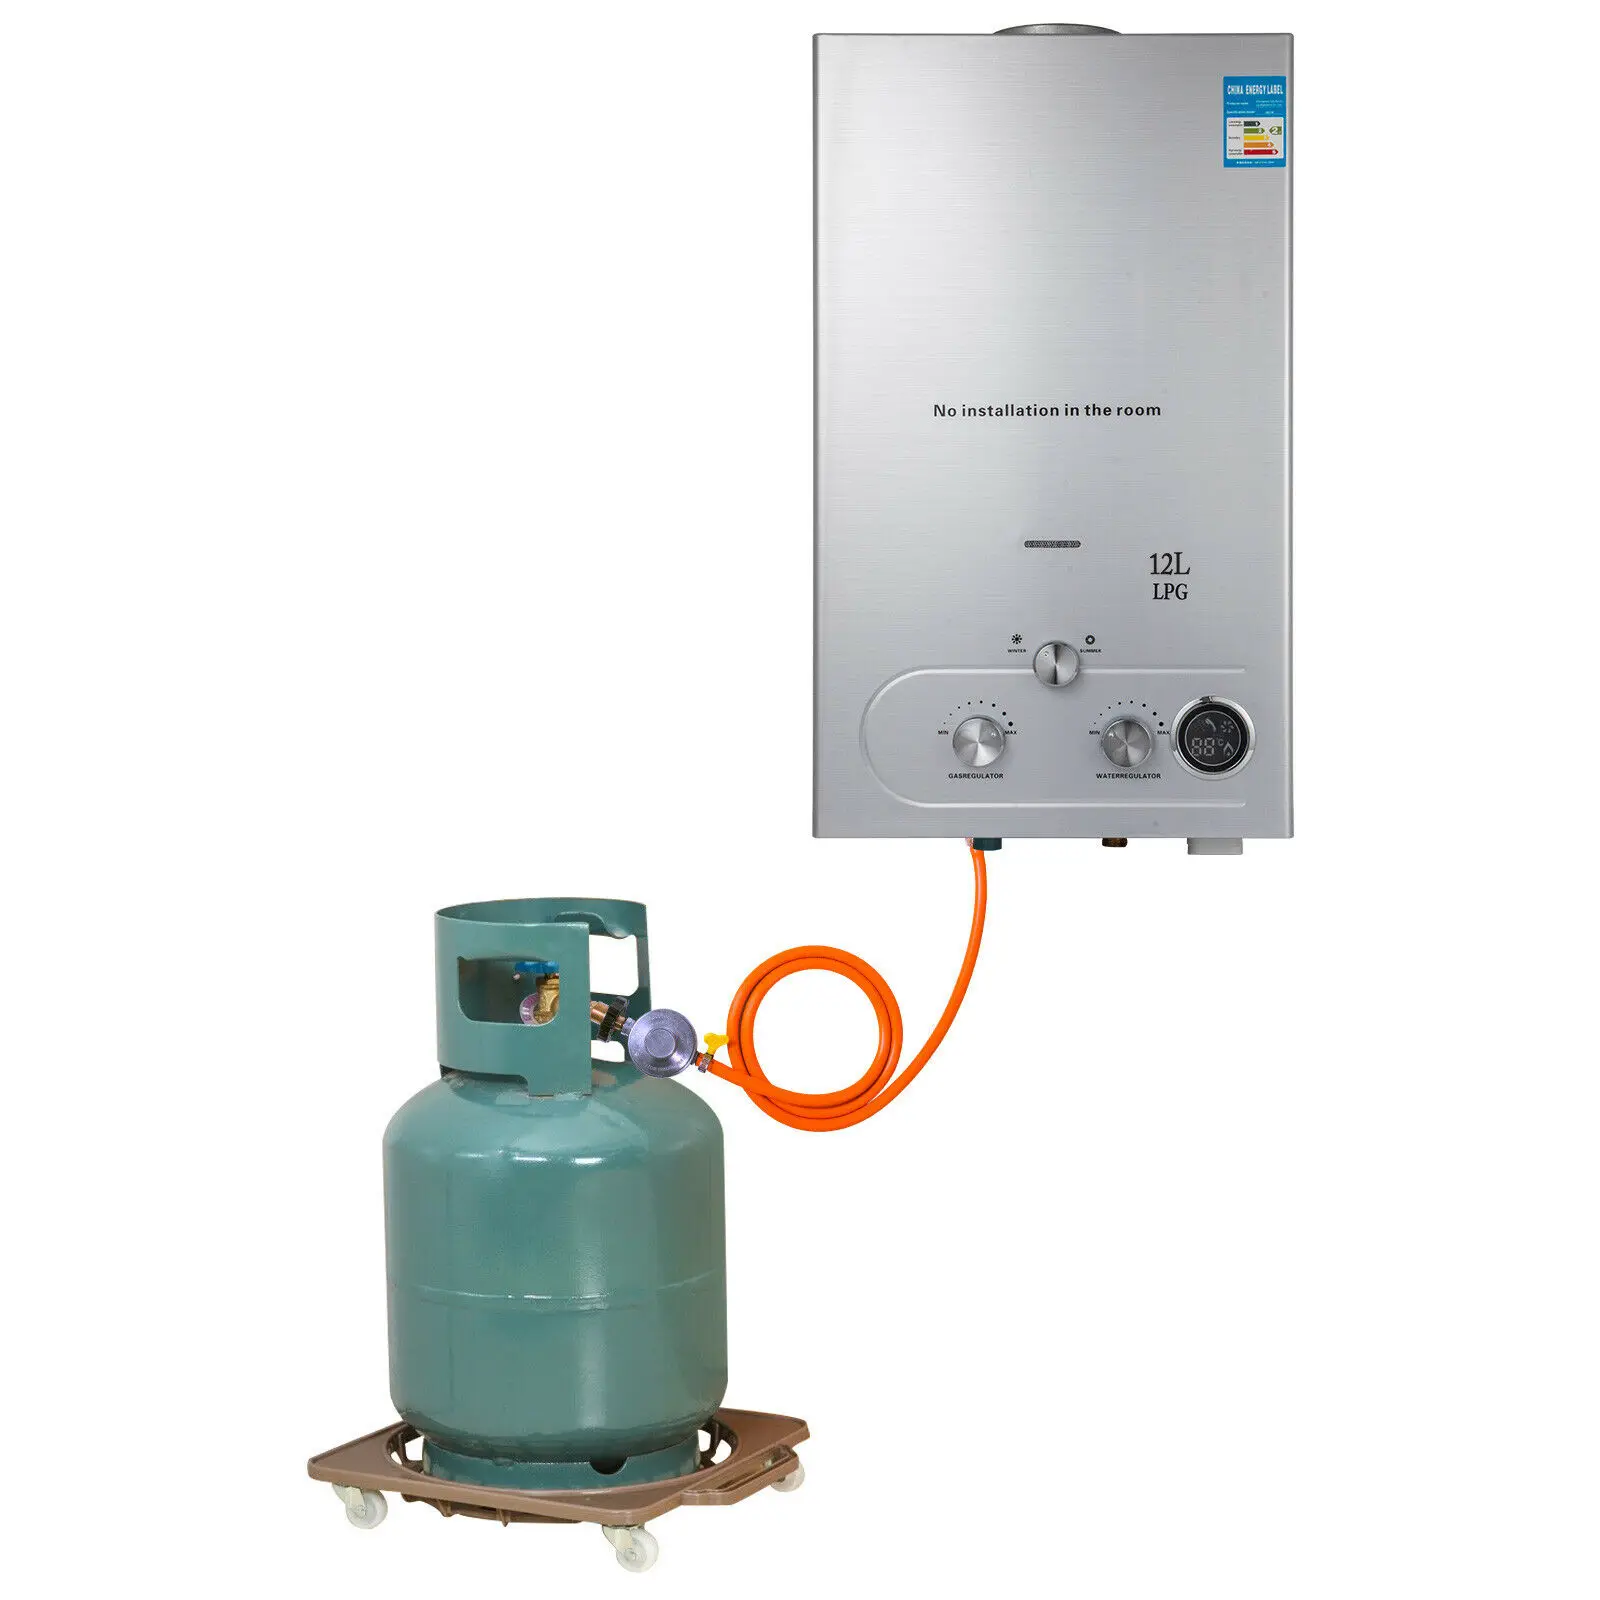 

12L LPG газовый водонагреватель бытовой мгновенный безрезервуарный пропан безрезервуарный газовый водонагреватель